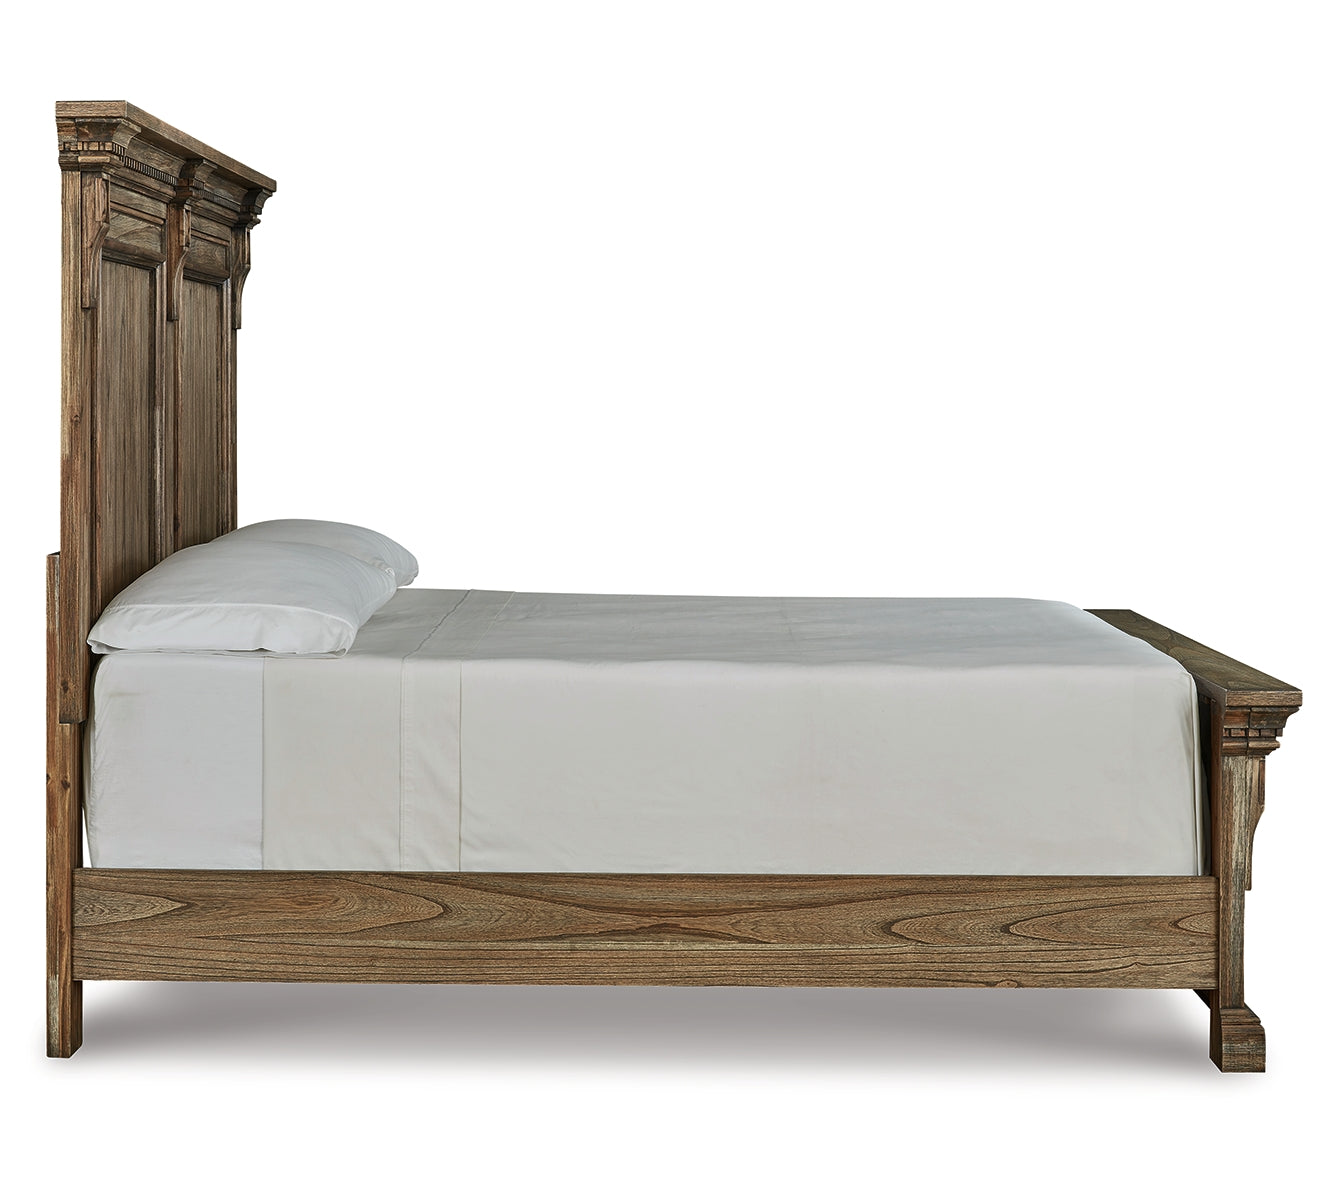 Markenburg Queen Panel Bed with Mirrored Dresser